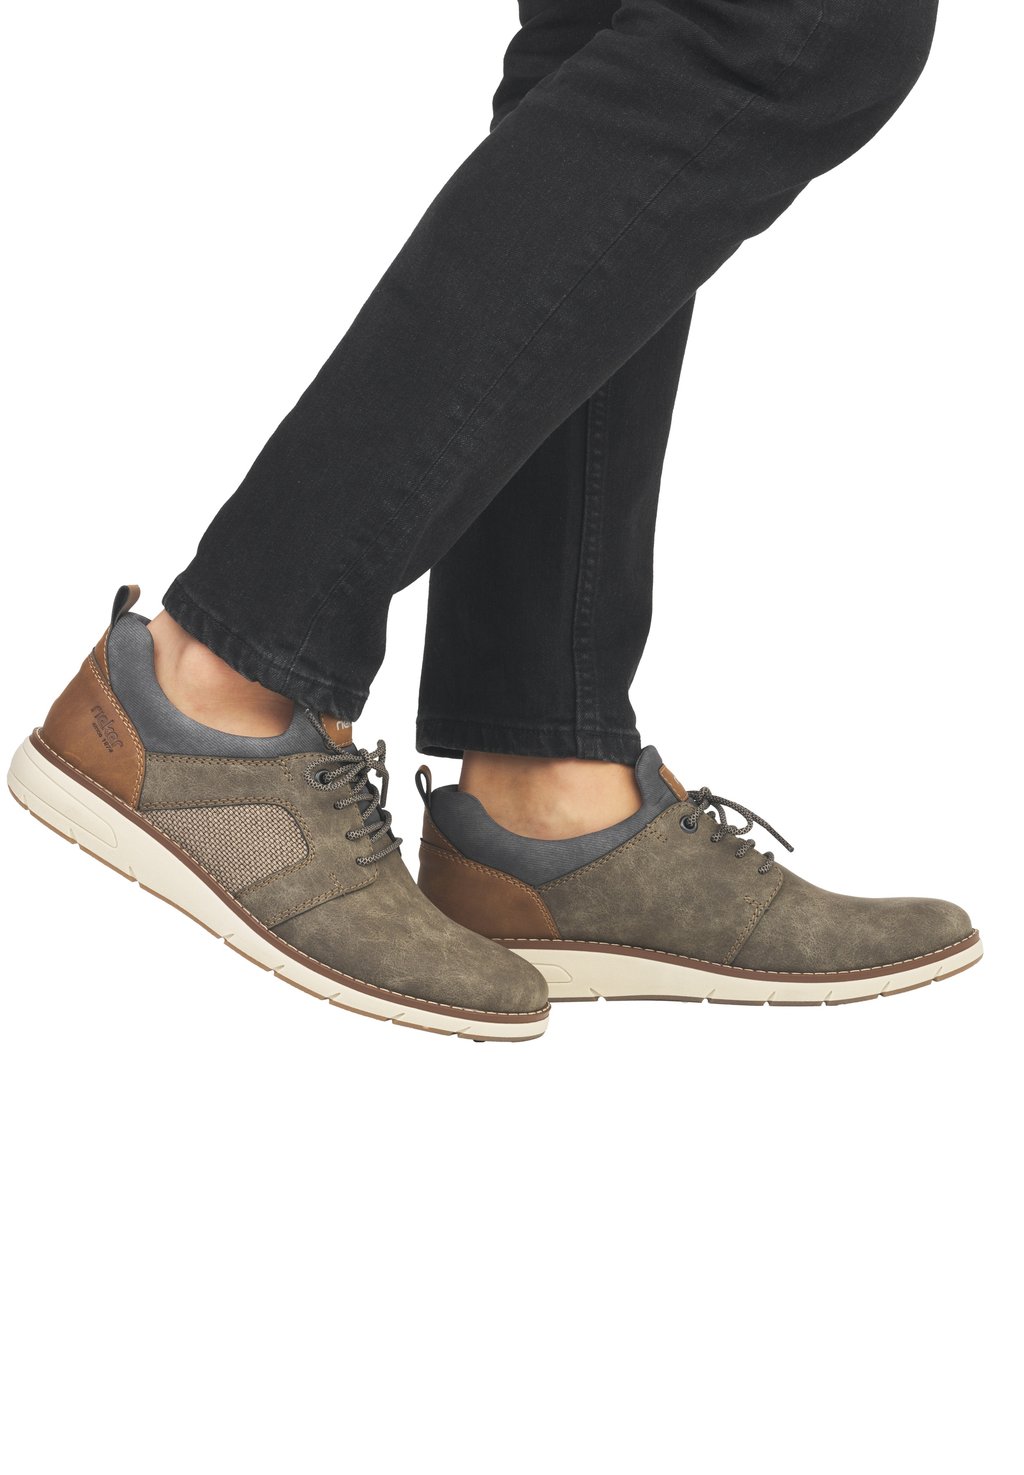 Спортивные туфли на шнуровке Rieker, цвет braun